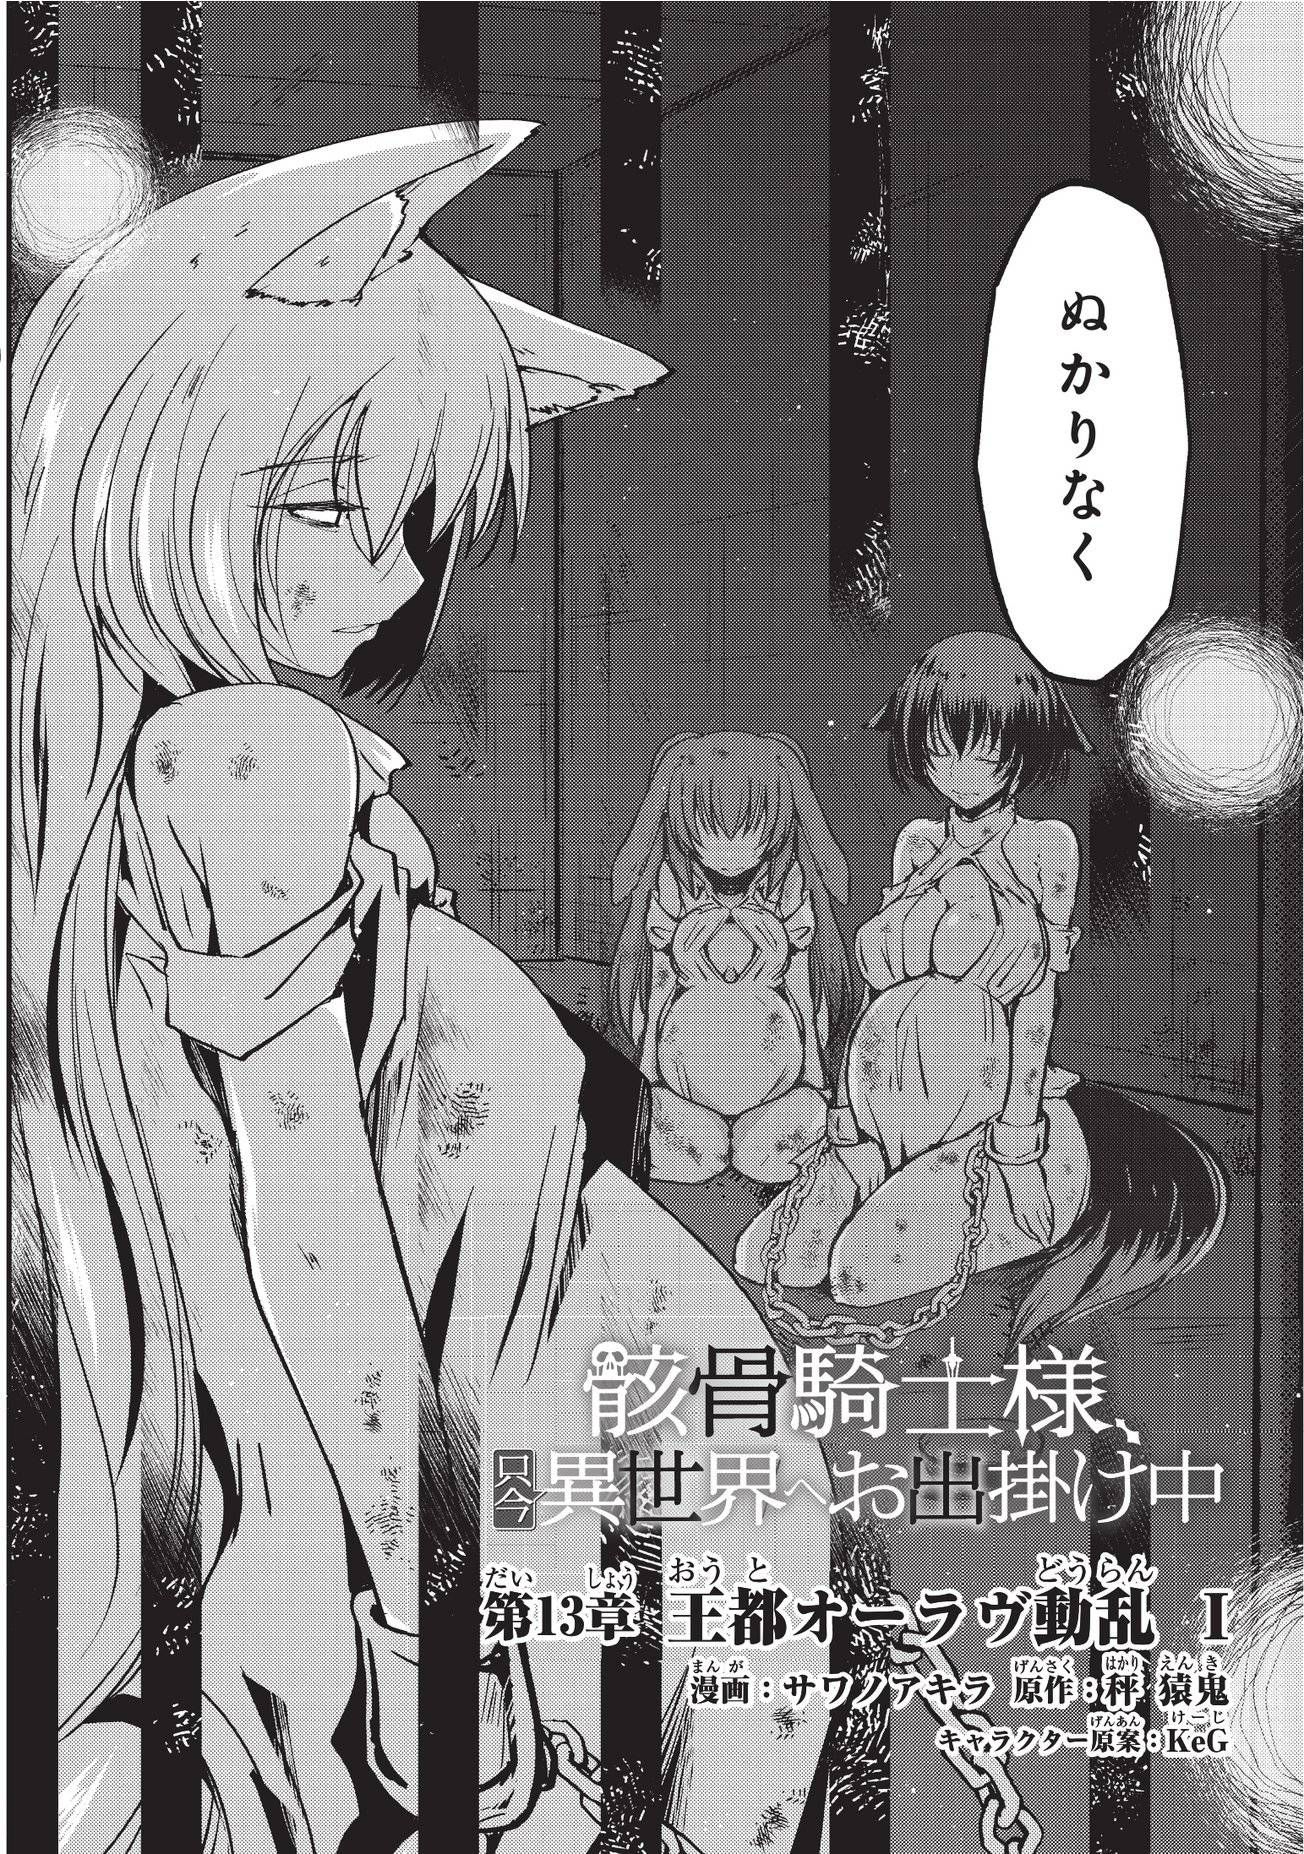 【Image】General manga with terrible erotic scenes Part 33 33